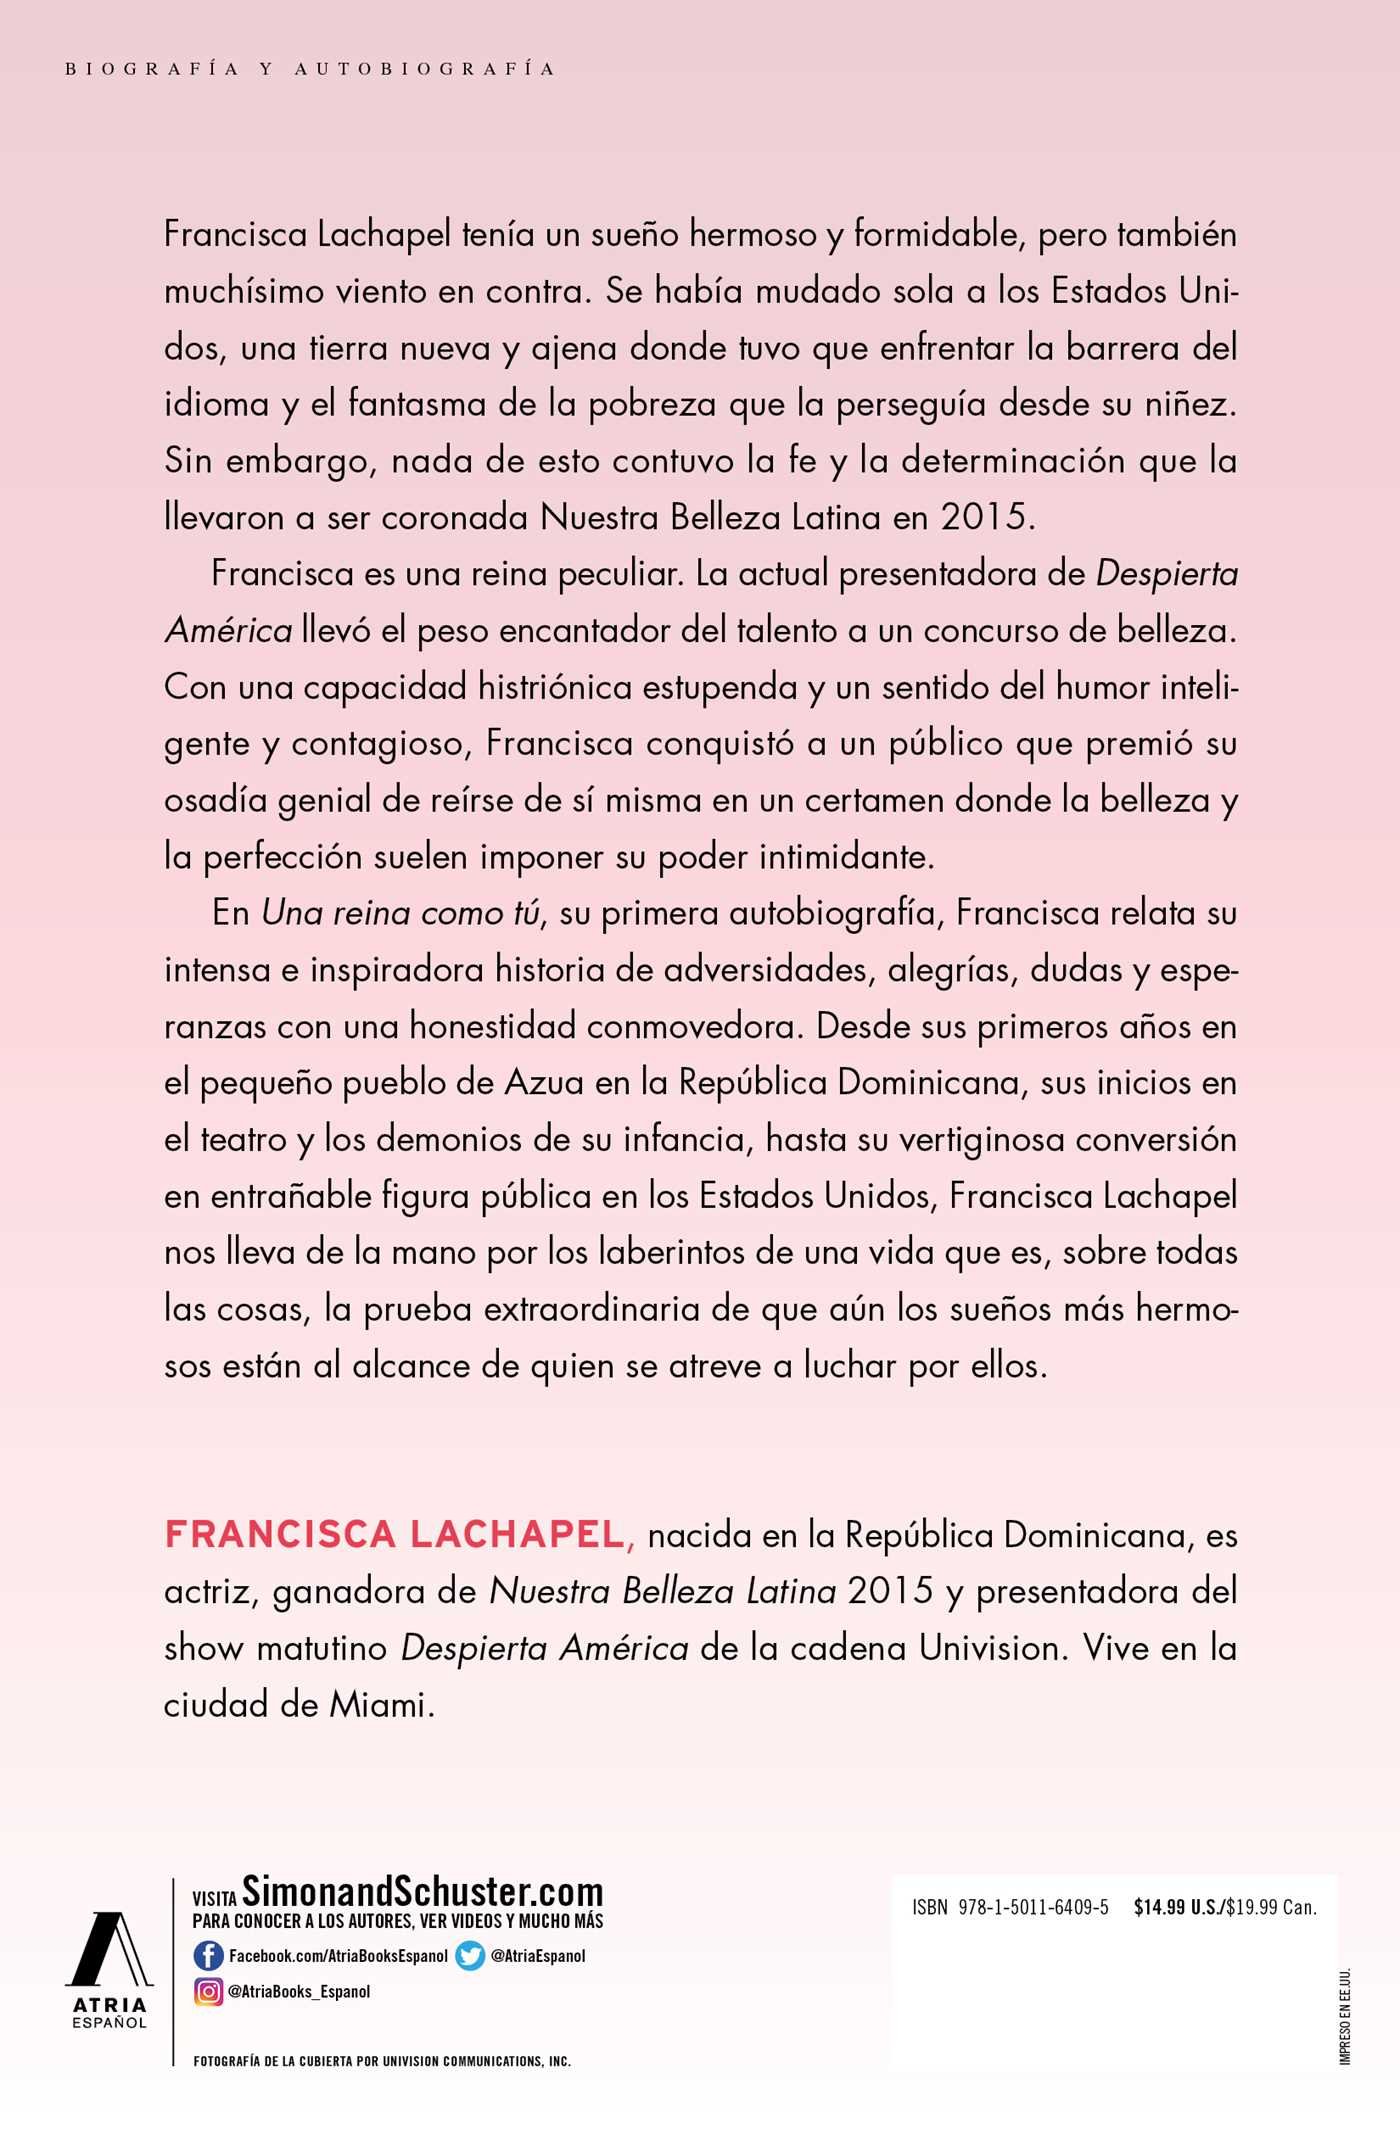 Una reina como tú (Atria Espanol) (Spanish Edition)